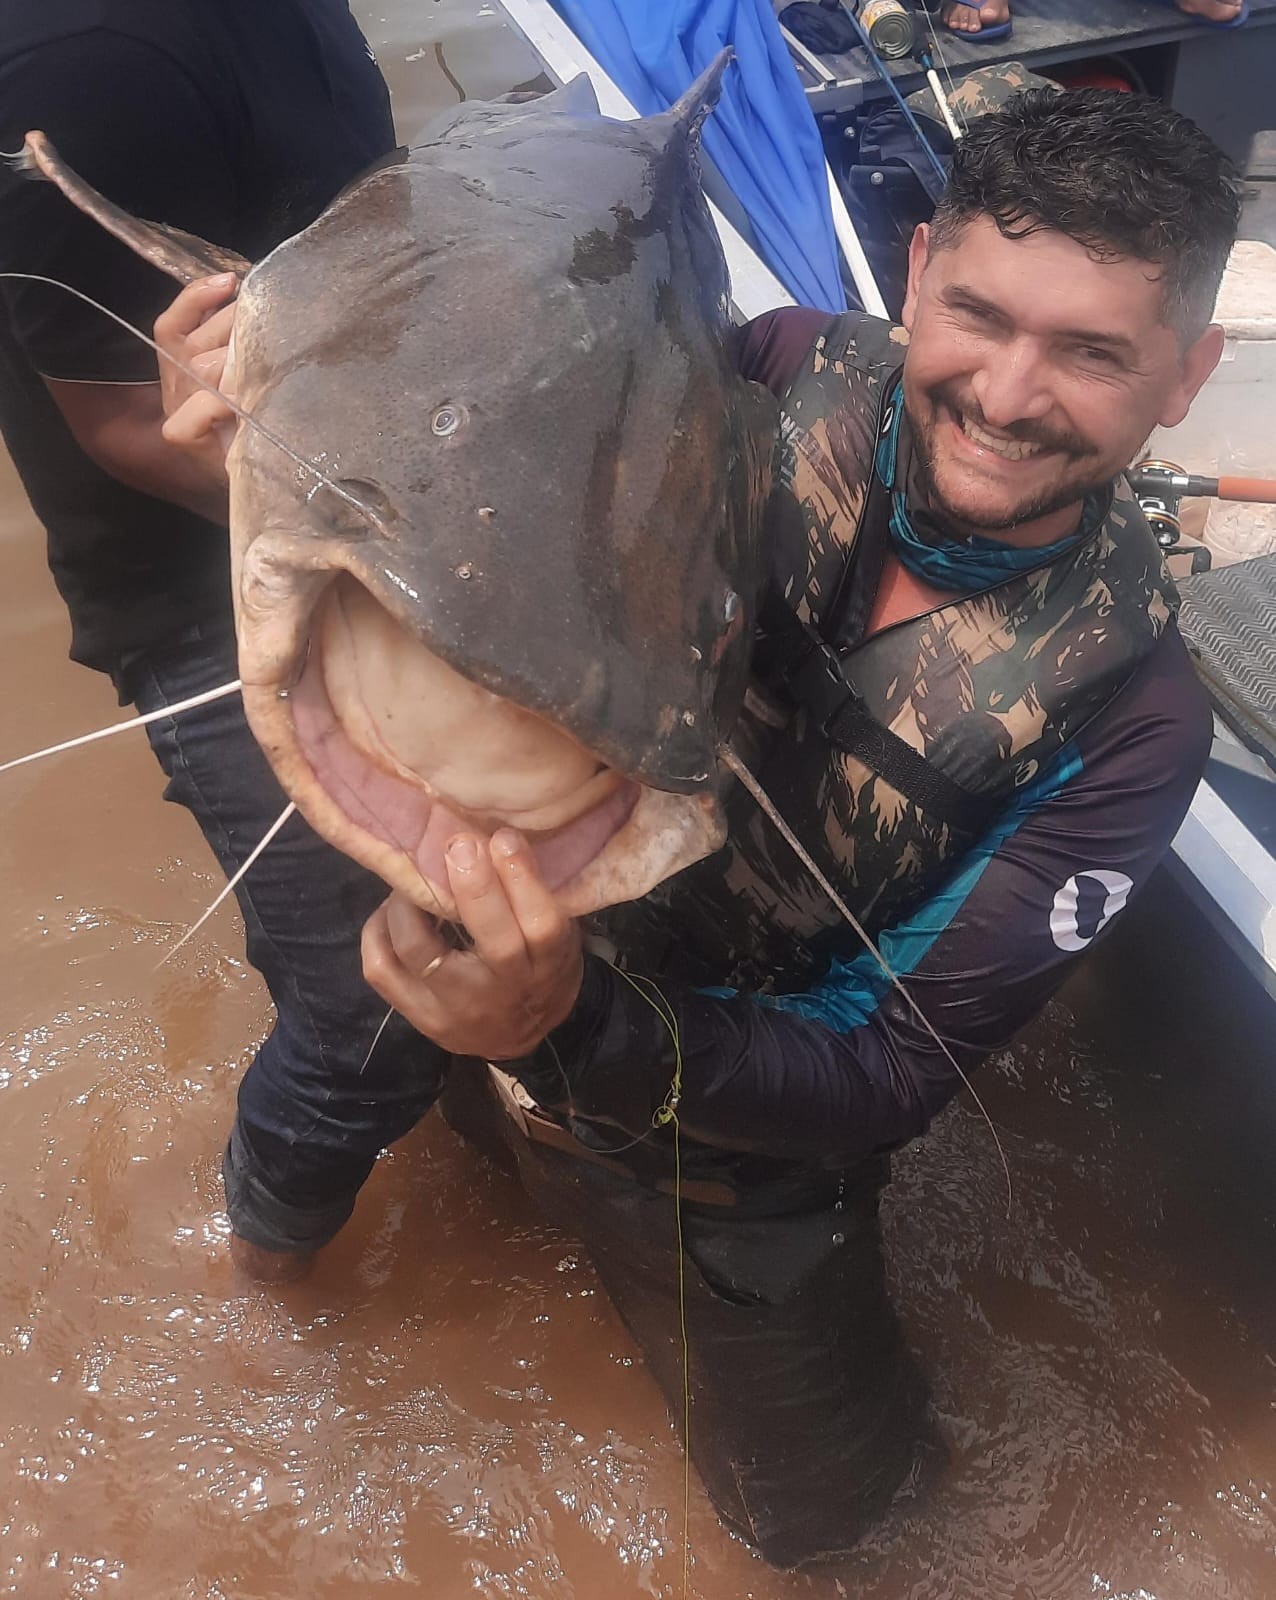 Pescador cumpre promessa e fisga peixe 'maior que a filha' em rio de Rondônia